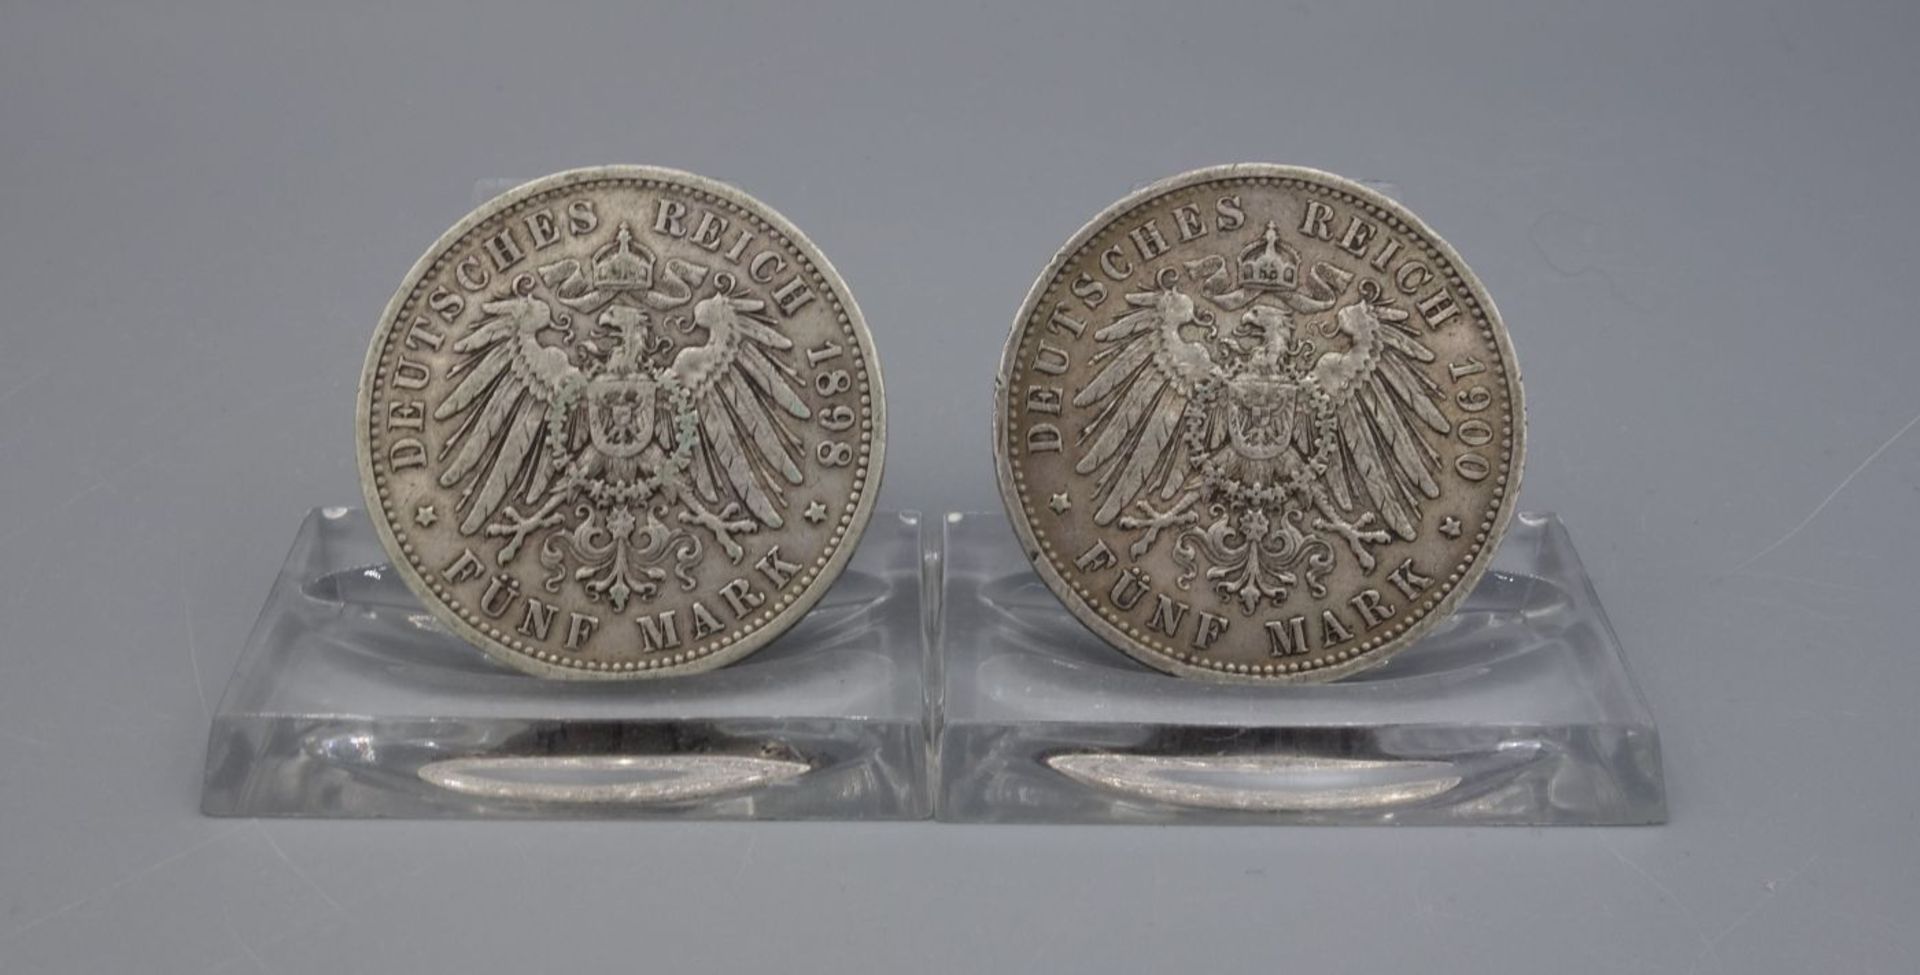 MÜNZEN (Deutsches Reich 1898 und 1900): 5 Mark - Bild 2 aus 2